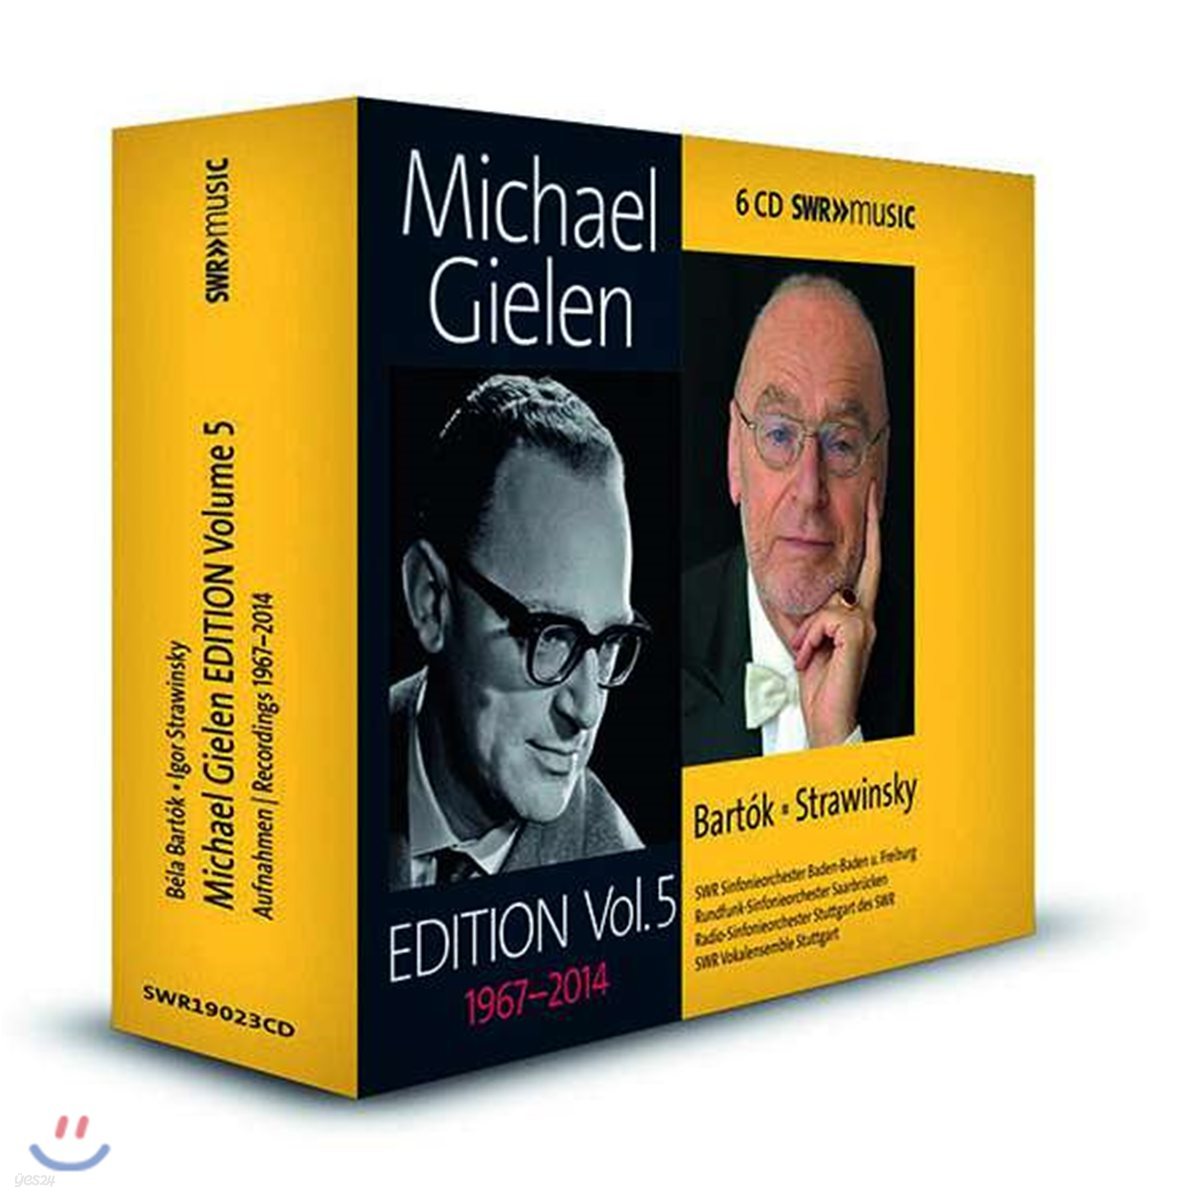 미하엘 길렌 에디션 5집 - 바르톡 / 스트라빈스키 (Michael Gielen Edition Vol. 5 1967-2014 Bartok & Stravinsky)